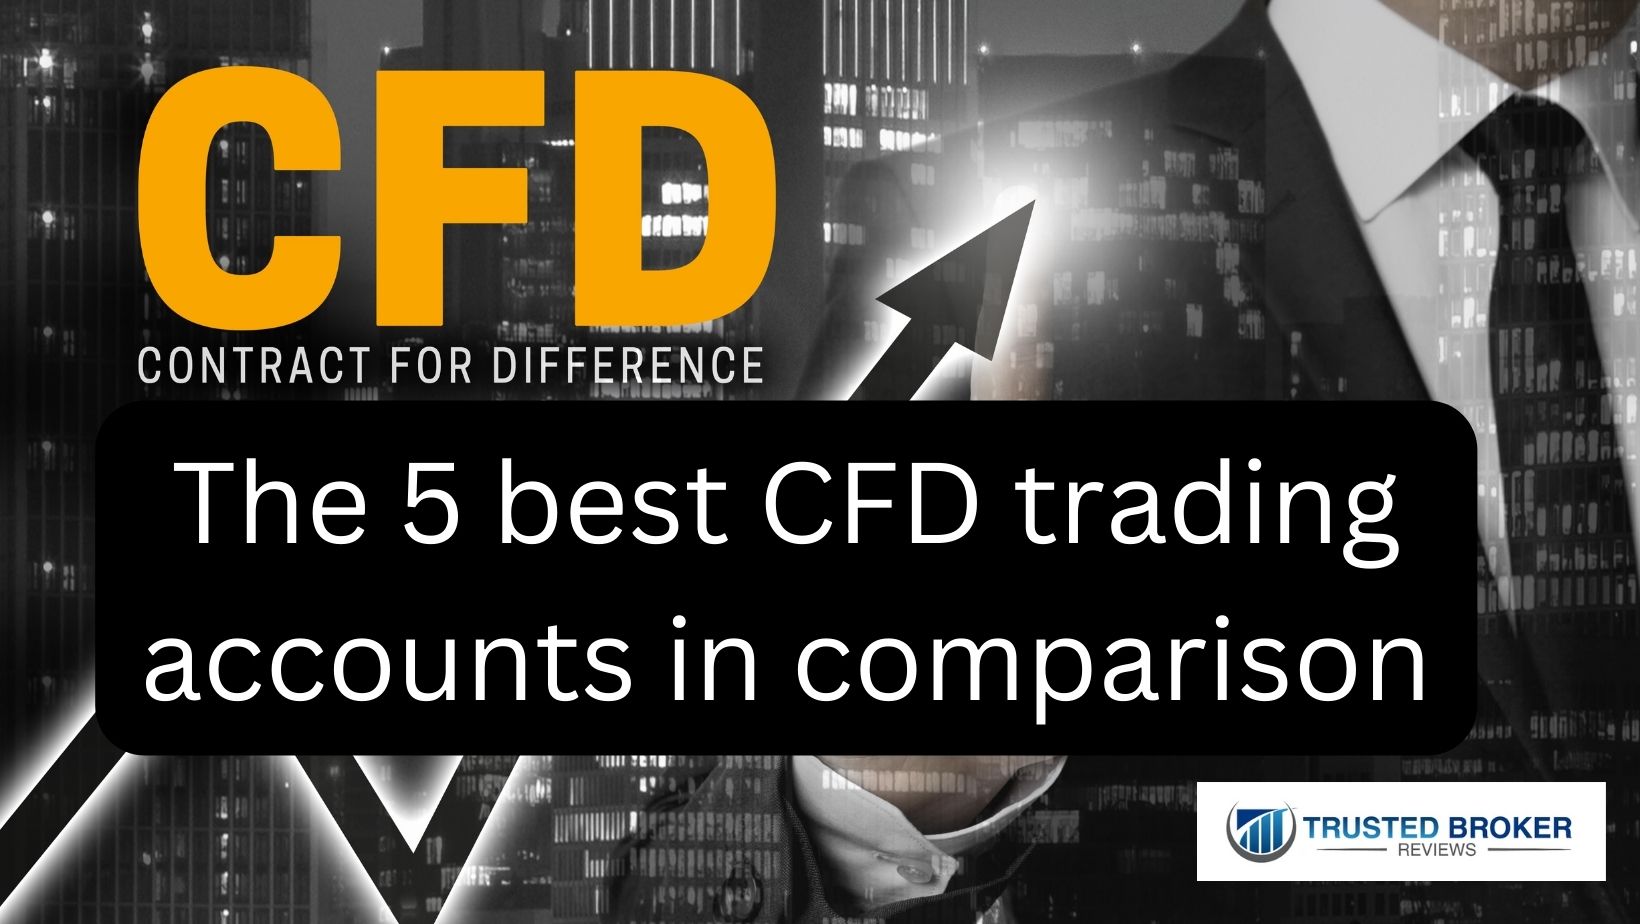 Vertailussa 5 parasta CFD-kaupankäyntitiliä